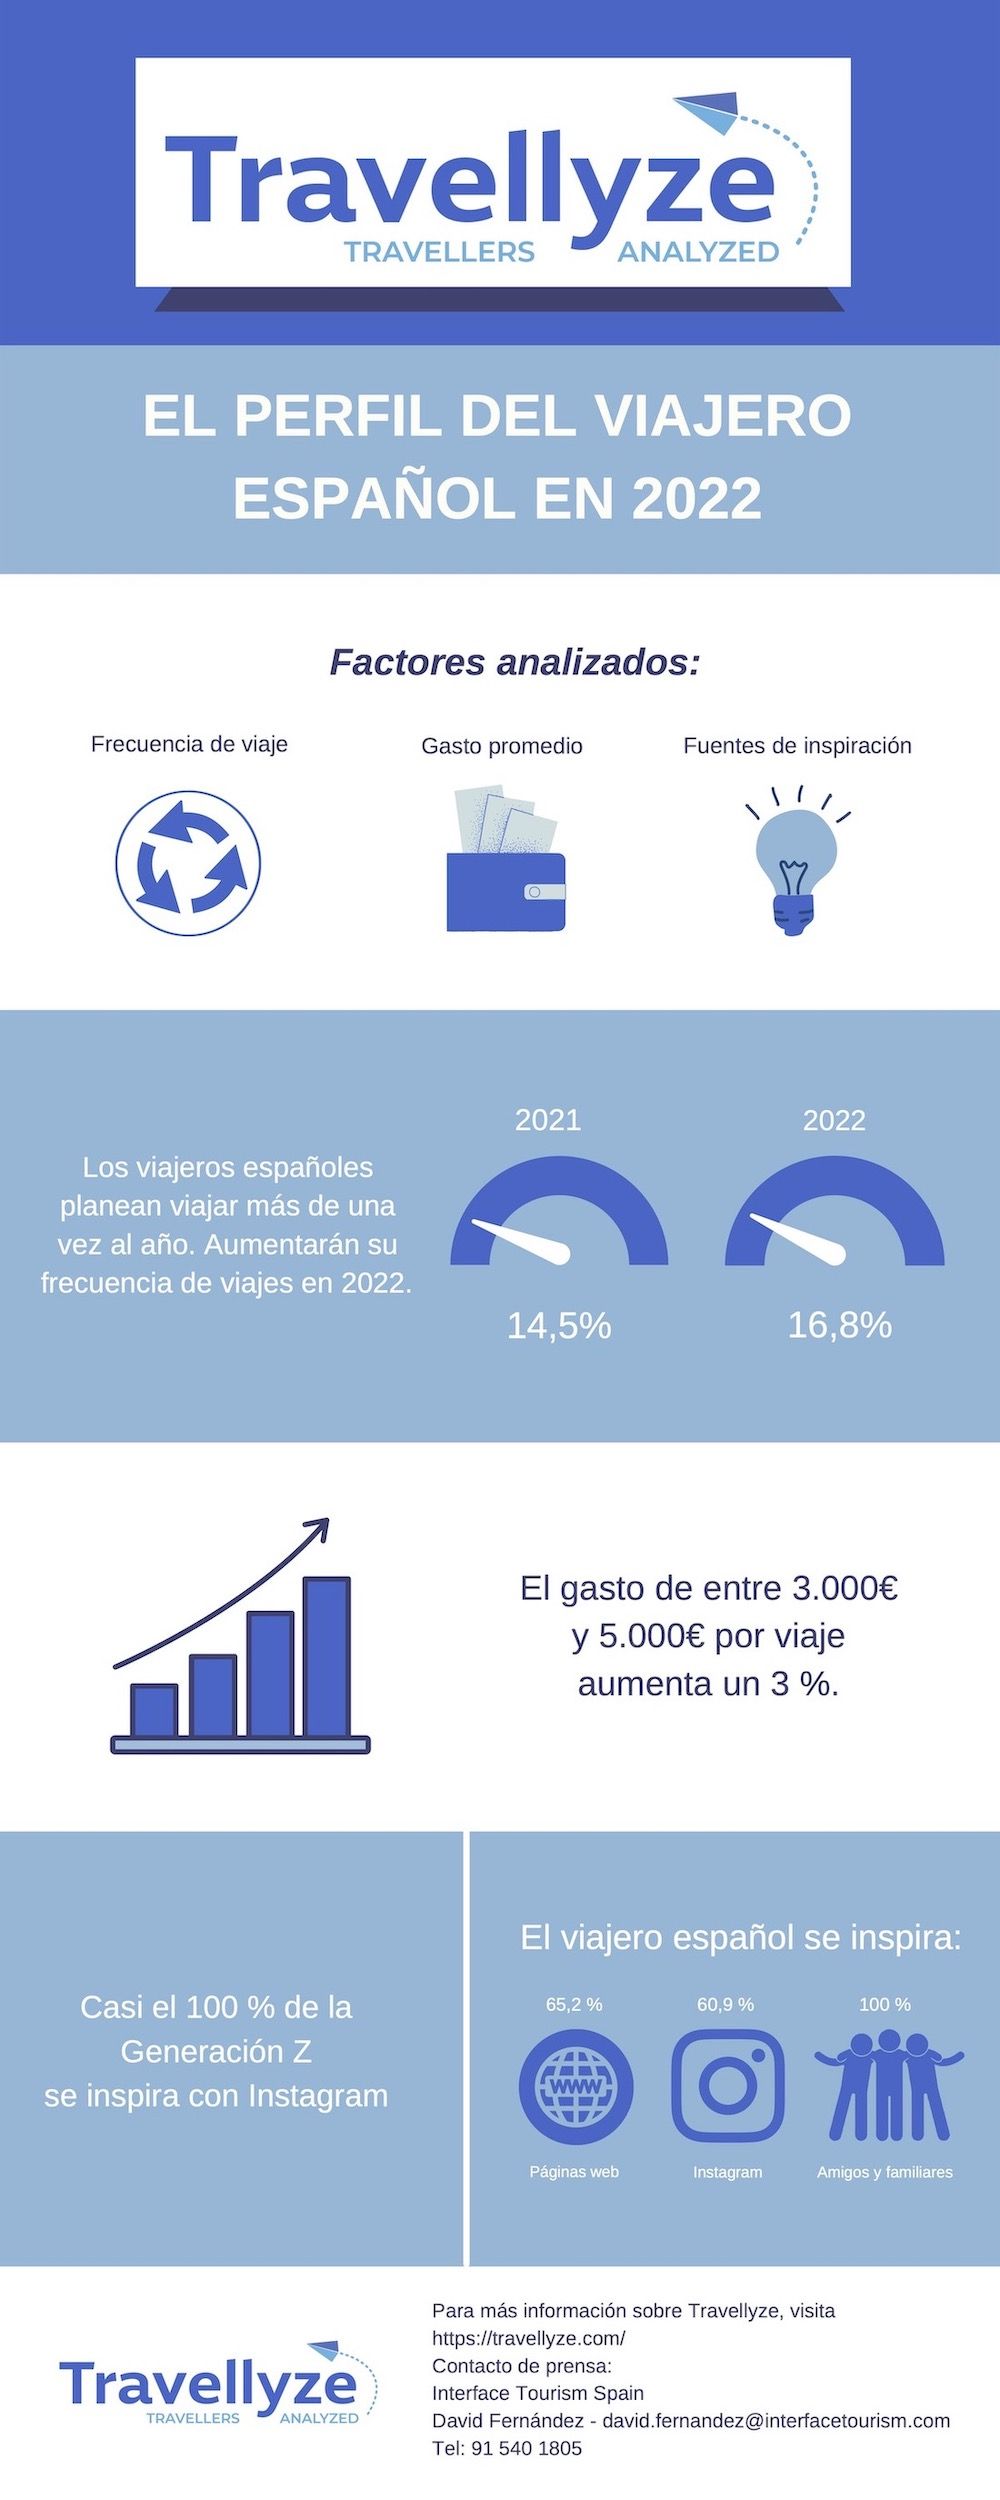 Infografia Trevellyze Perfil Viajero espanol